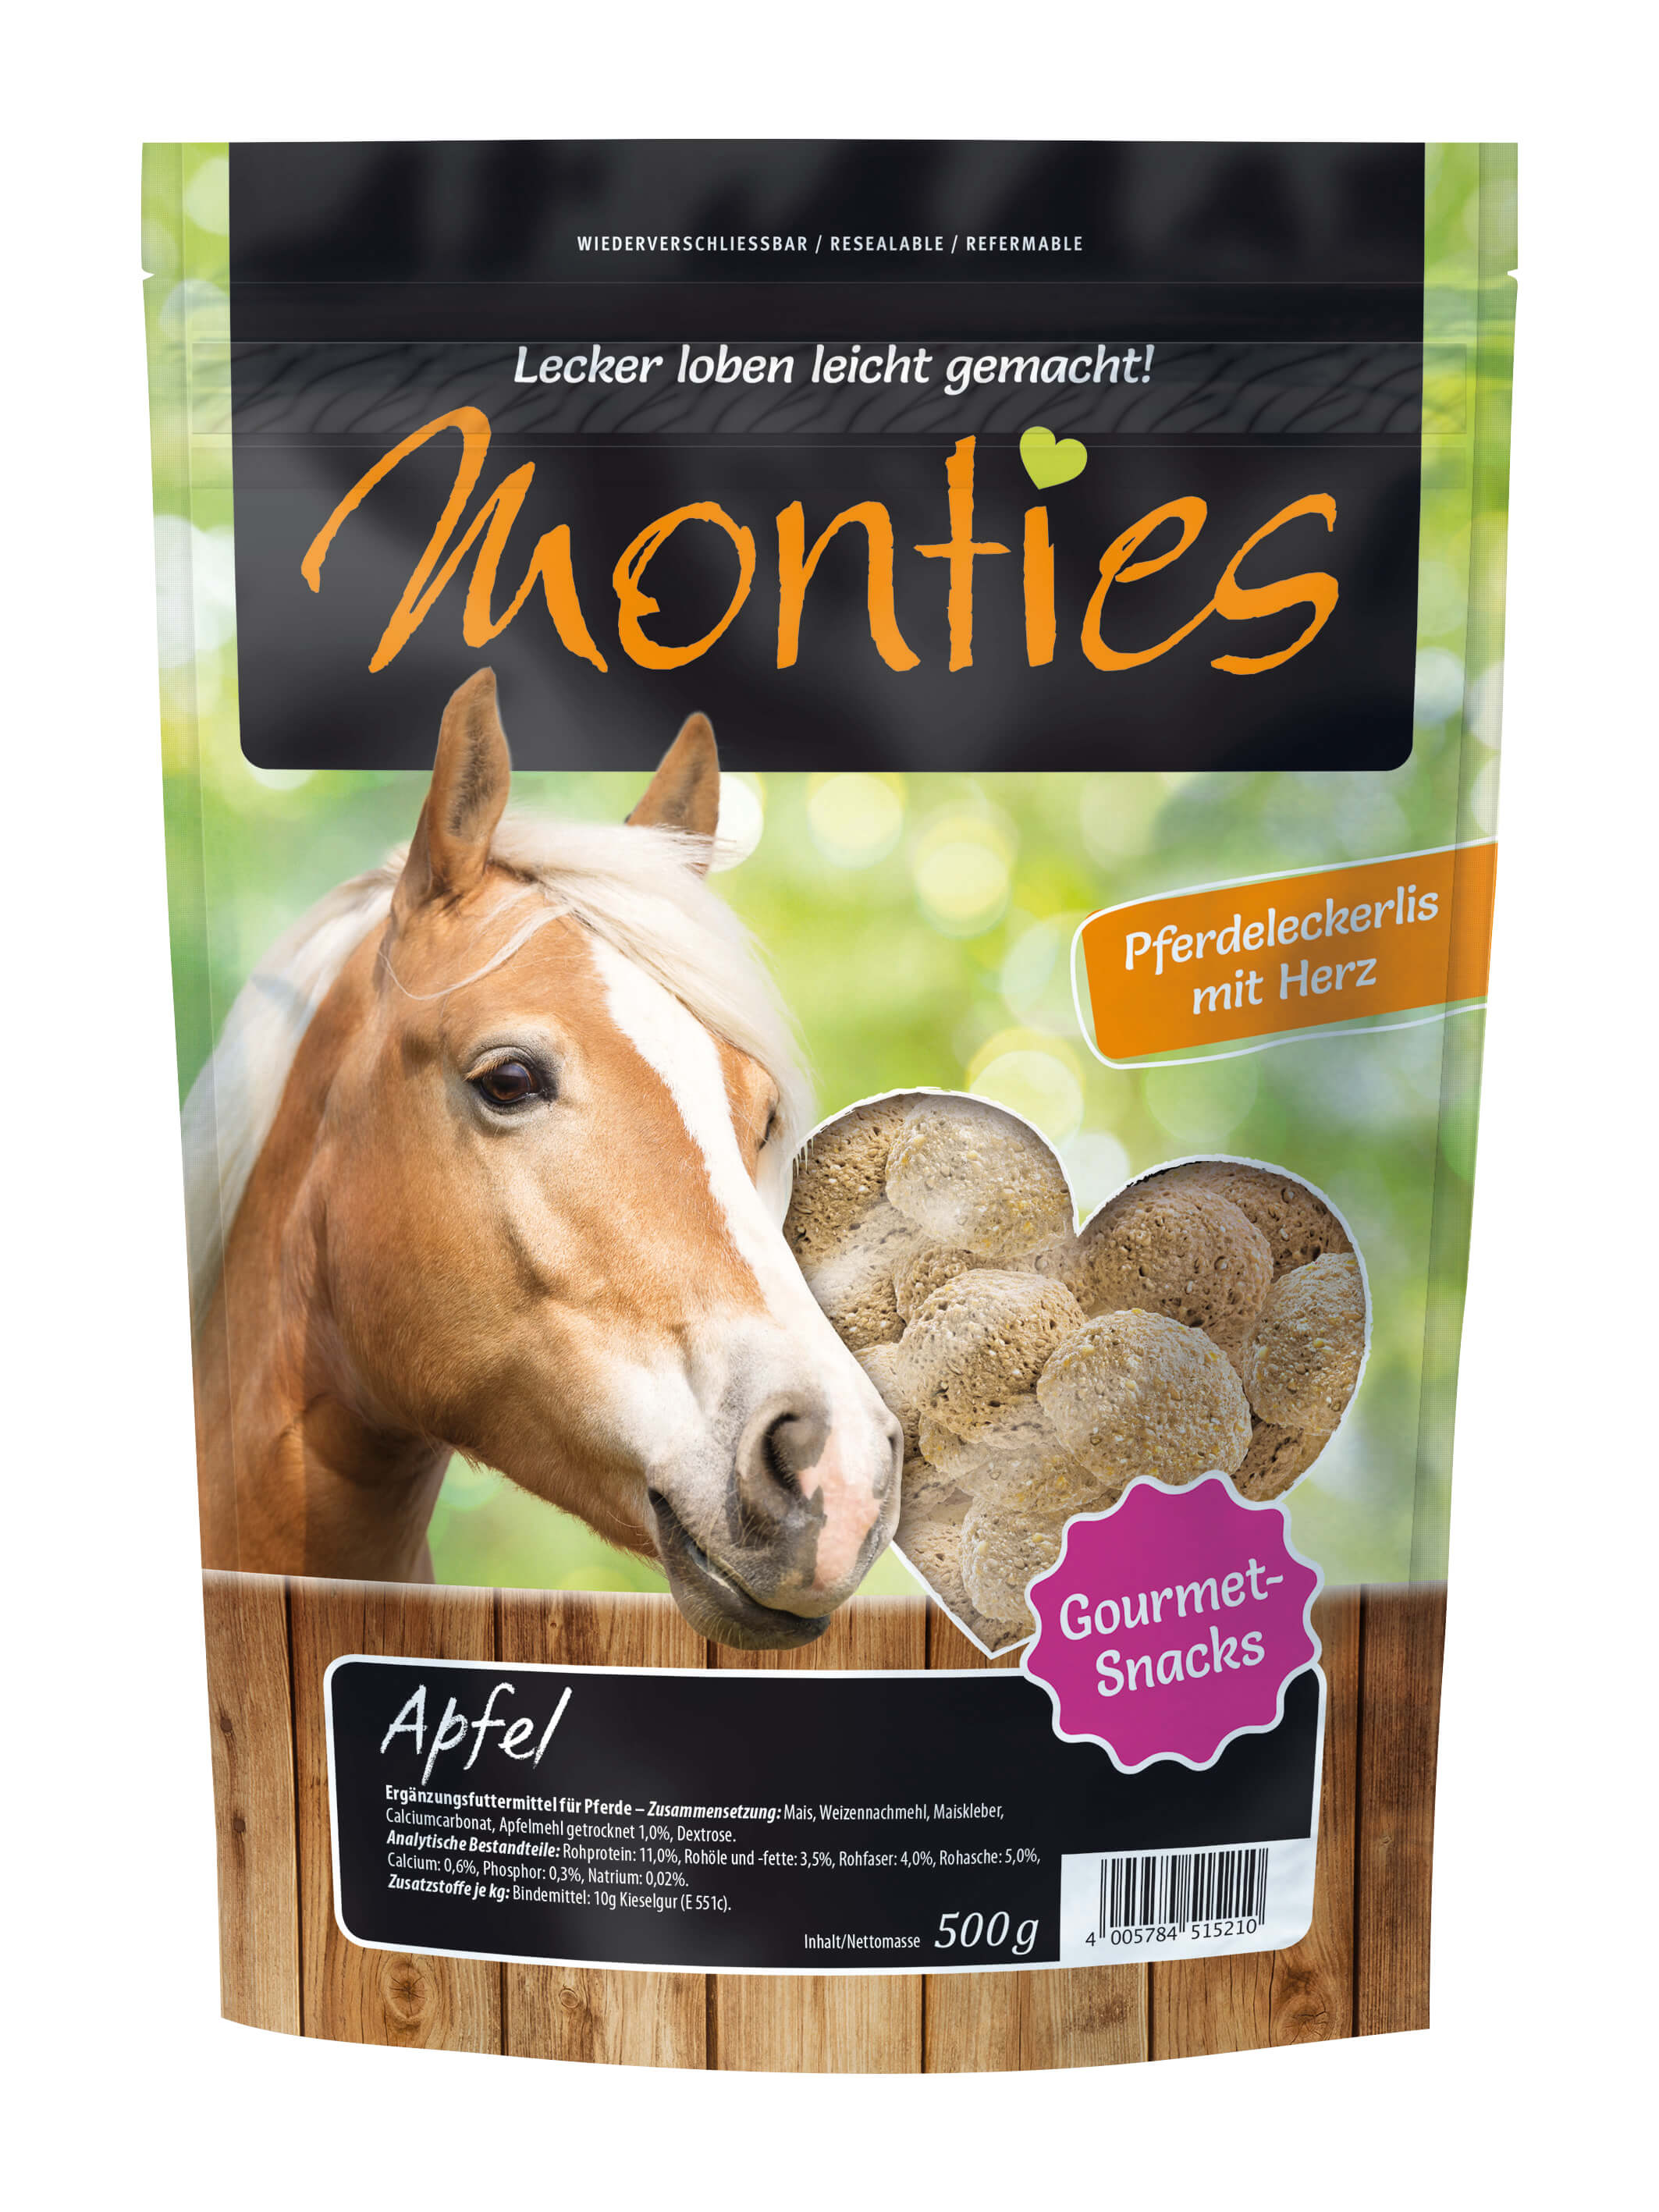 Monties - Apfel-Snacks